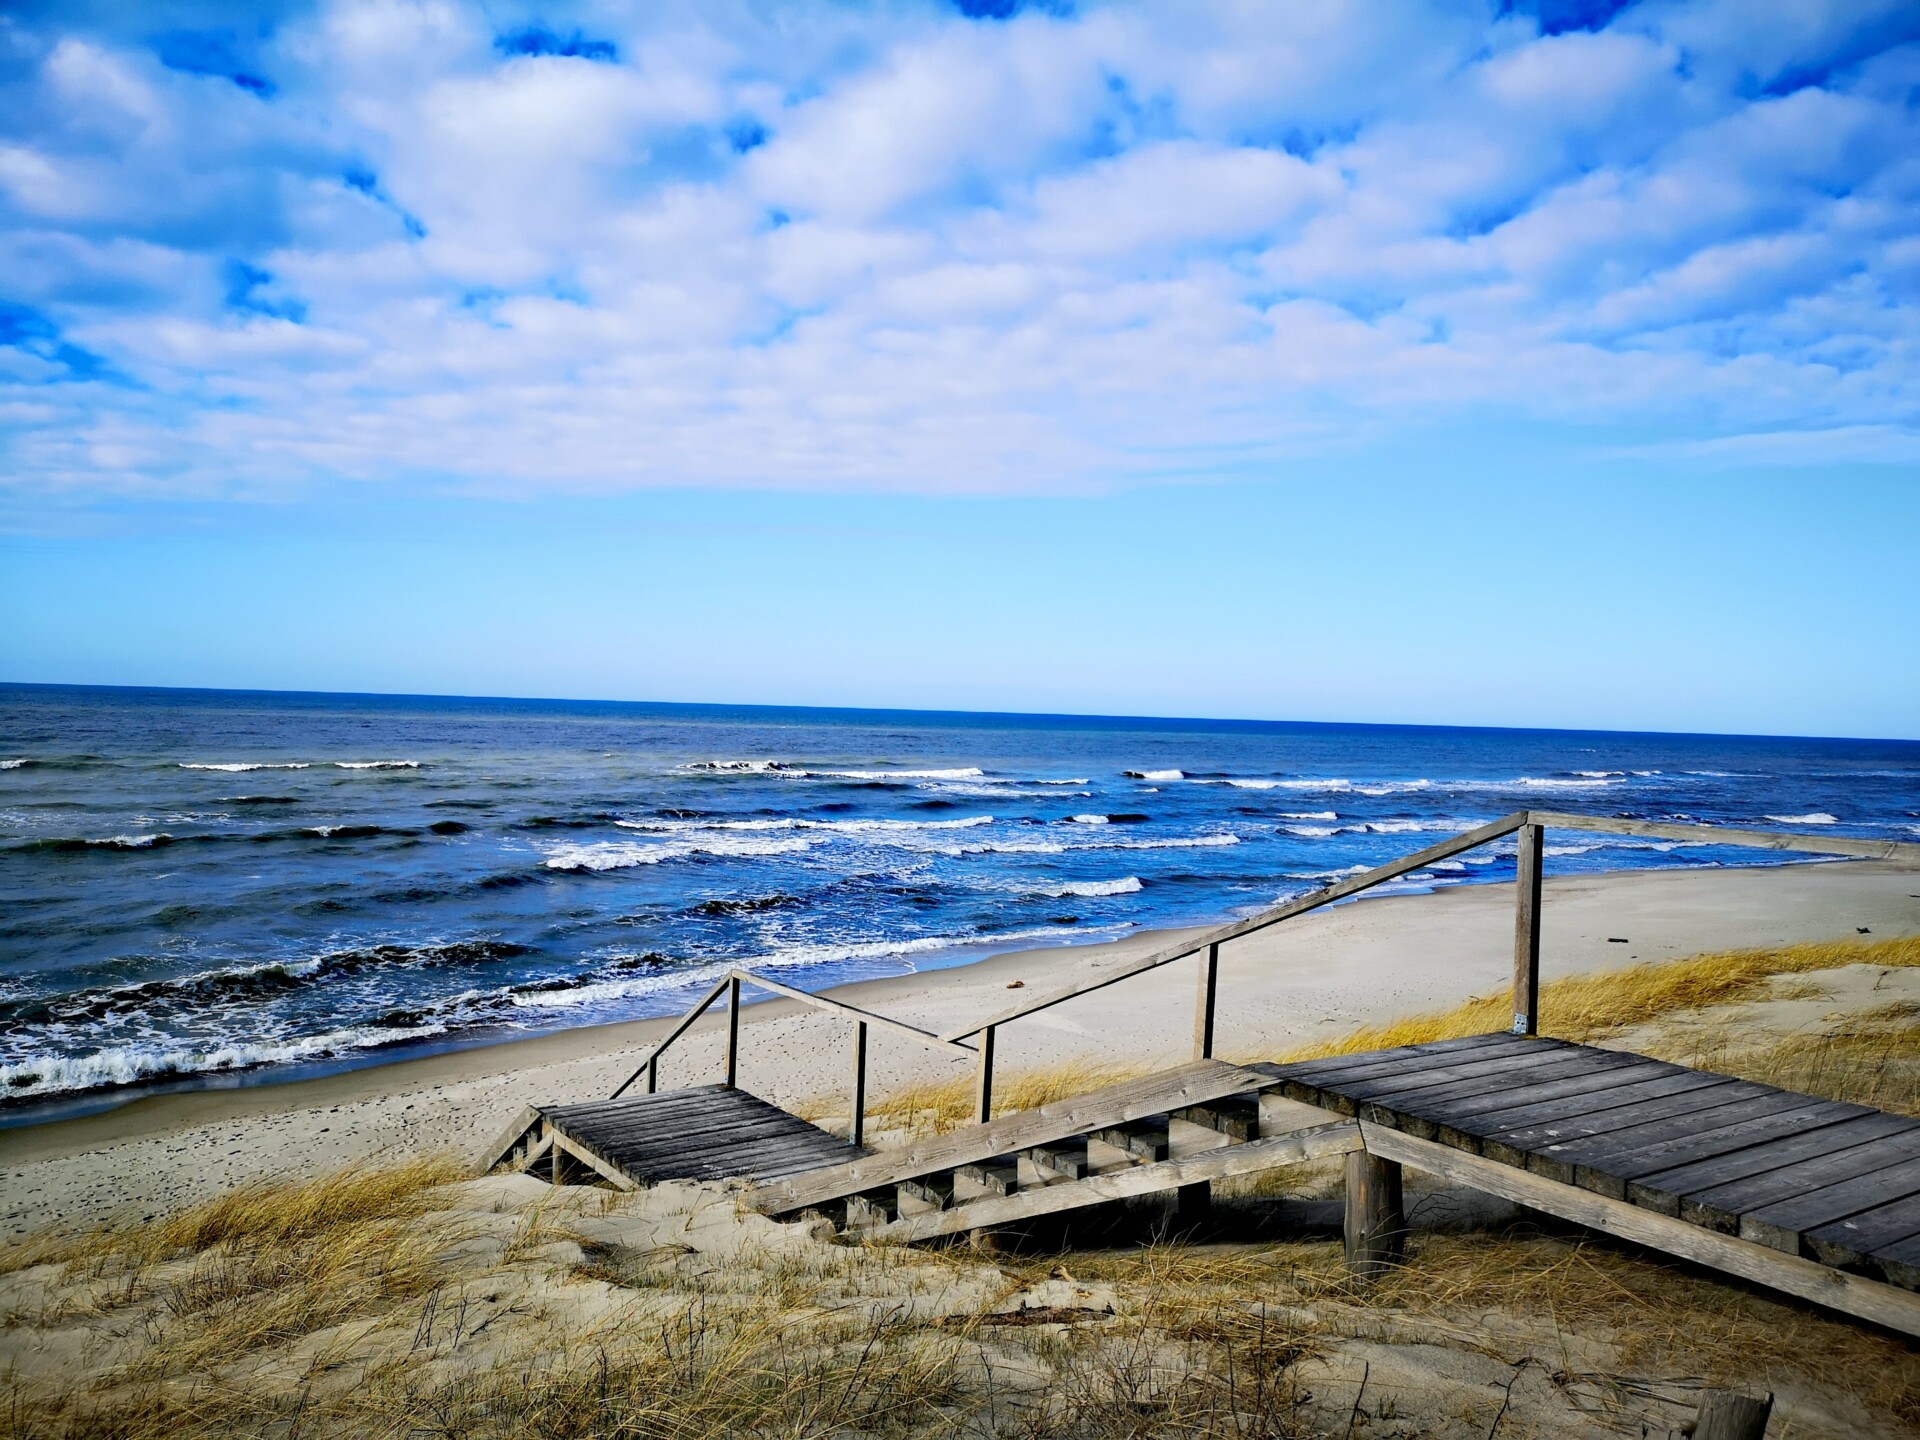 Bild eines ruhigen Strandes mit einer Holztreppe, die durch Dünen zum Meer führt, unter einem blauen Himmel mit leichter Bewölkung.